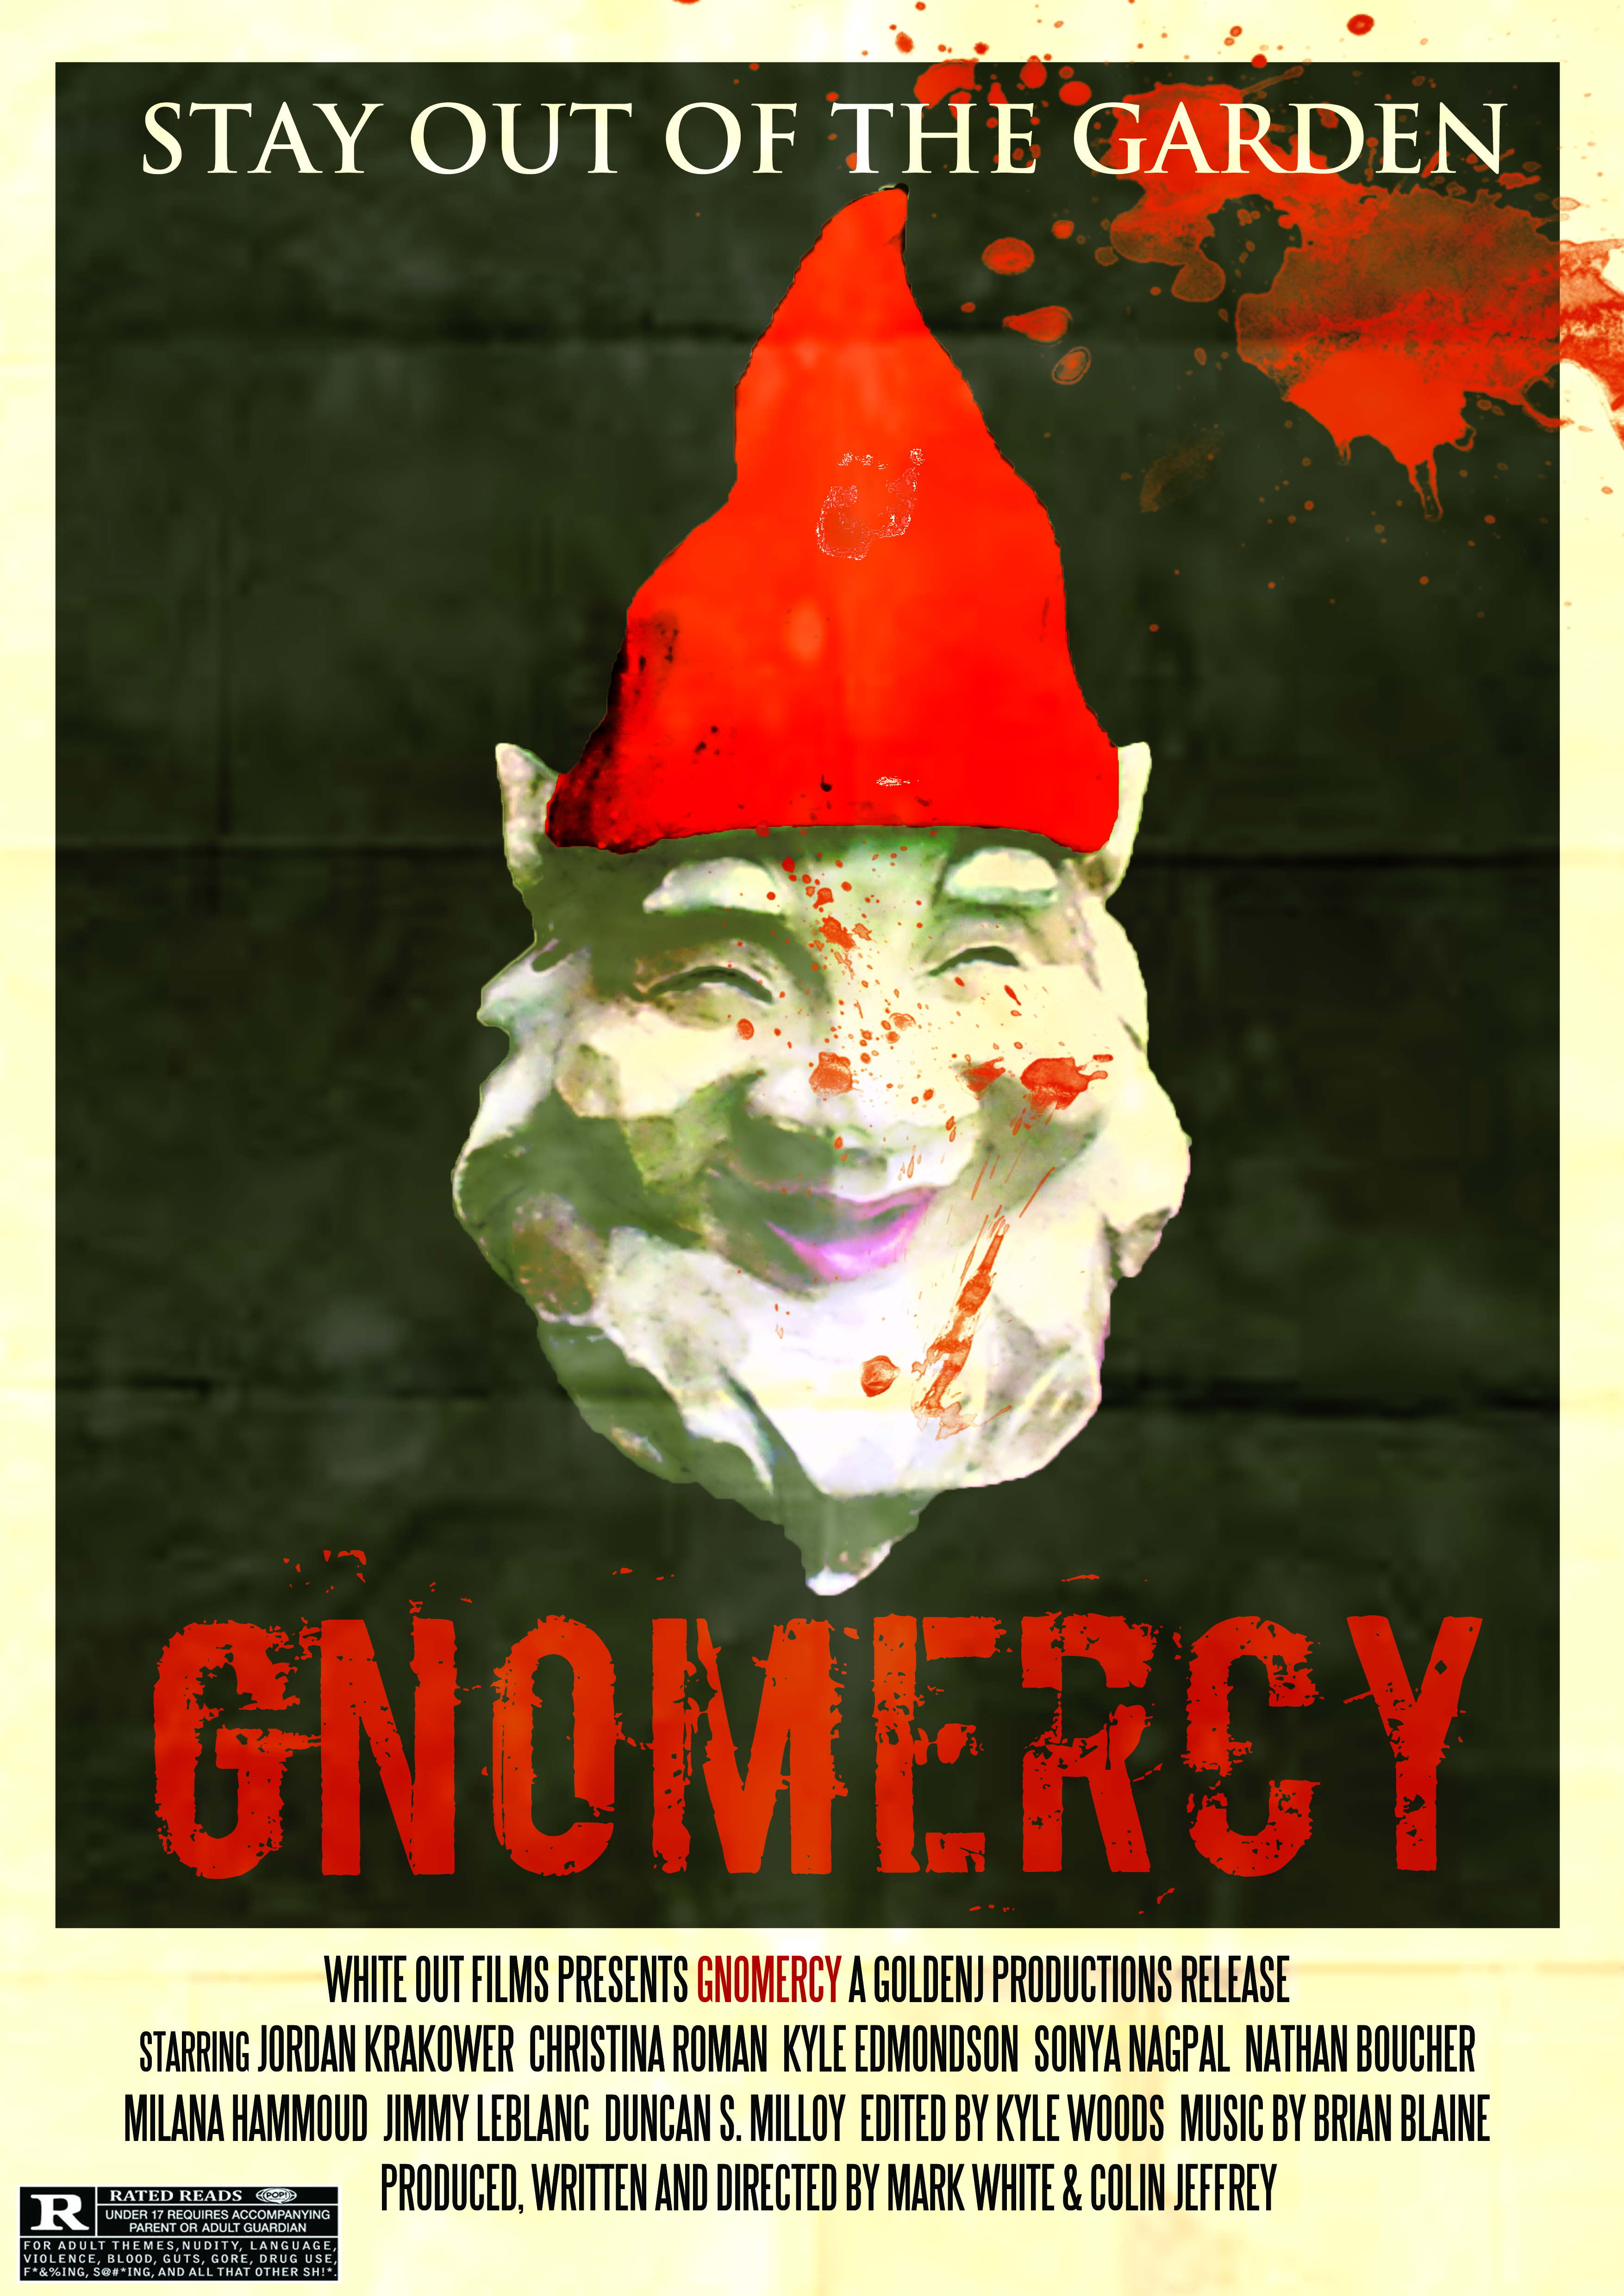 Gnomercy (2019)